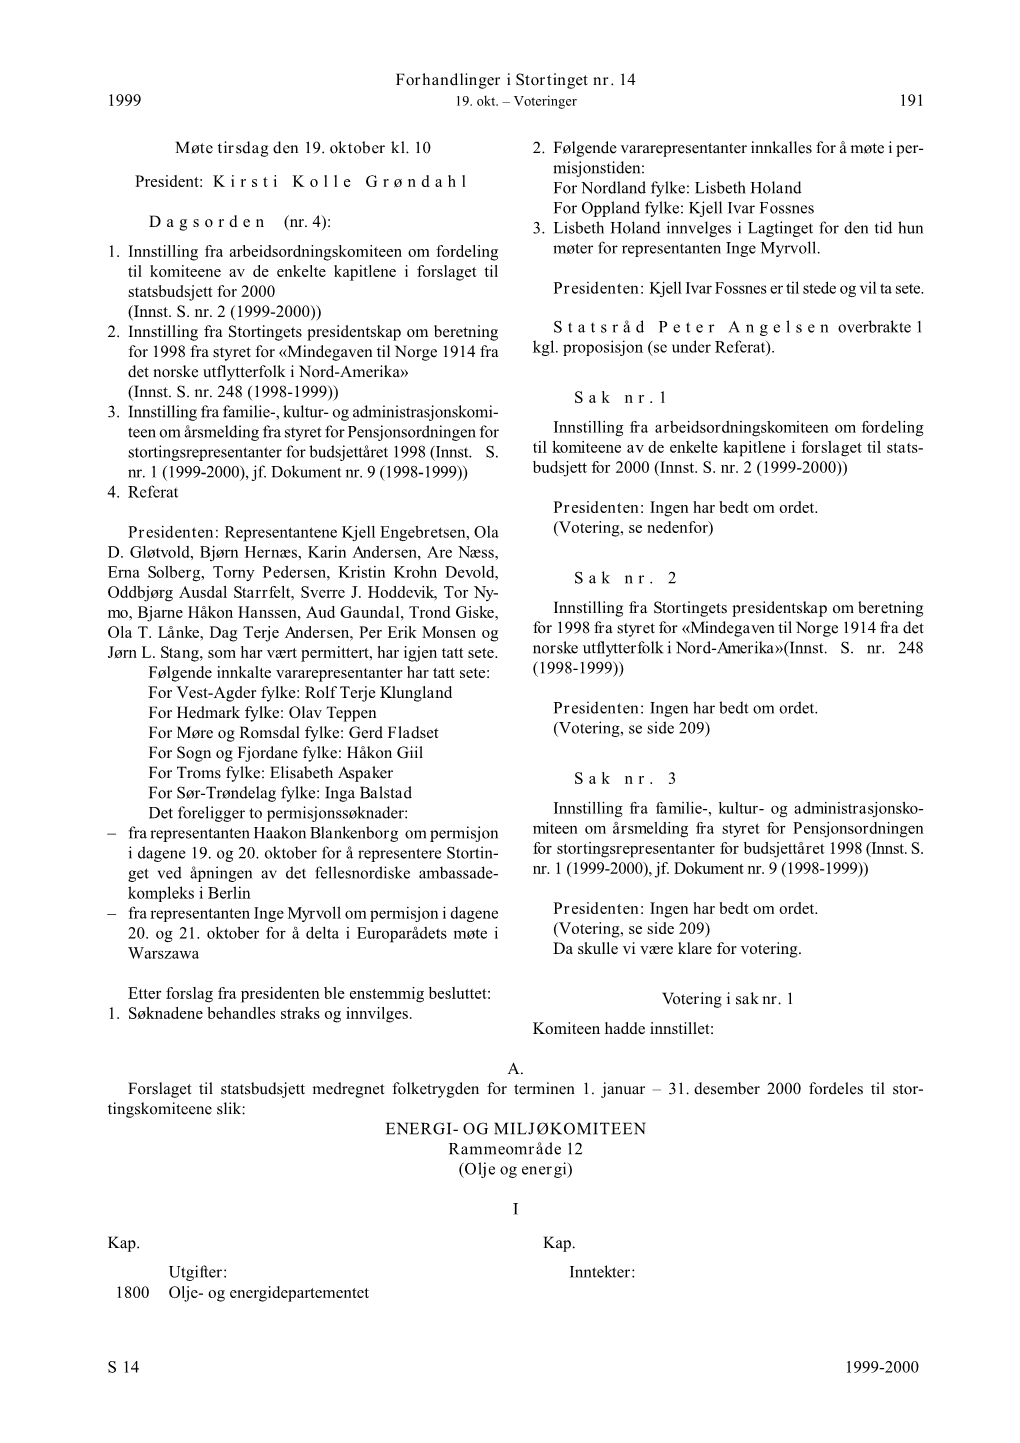 Forhandlinger I Stortinget Nr. 14 S 1999-2000 1999 191 Møte Tirsdag